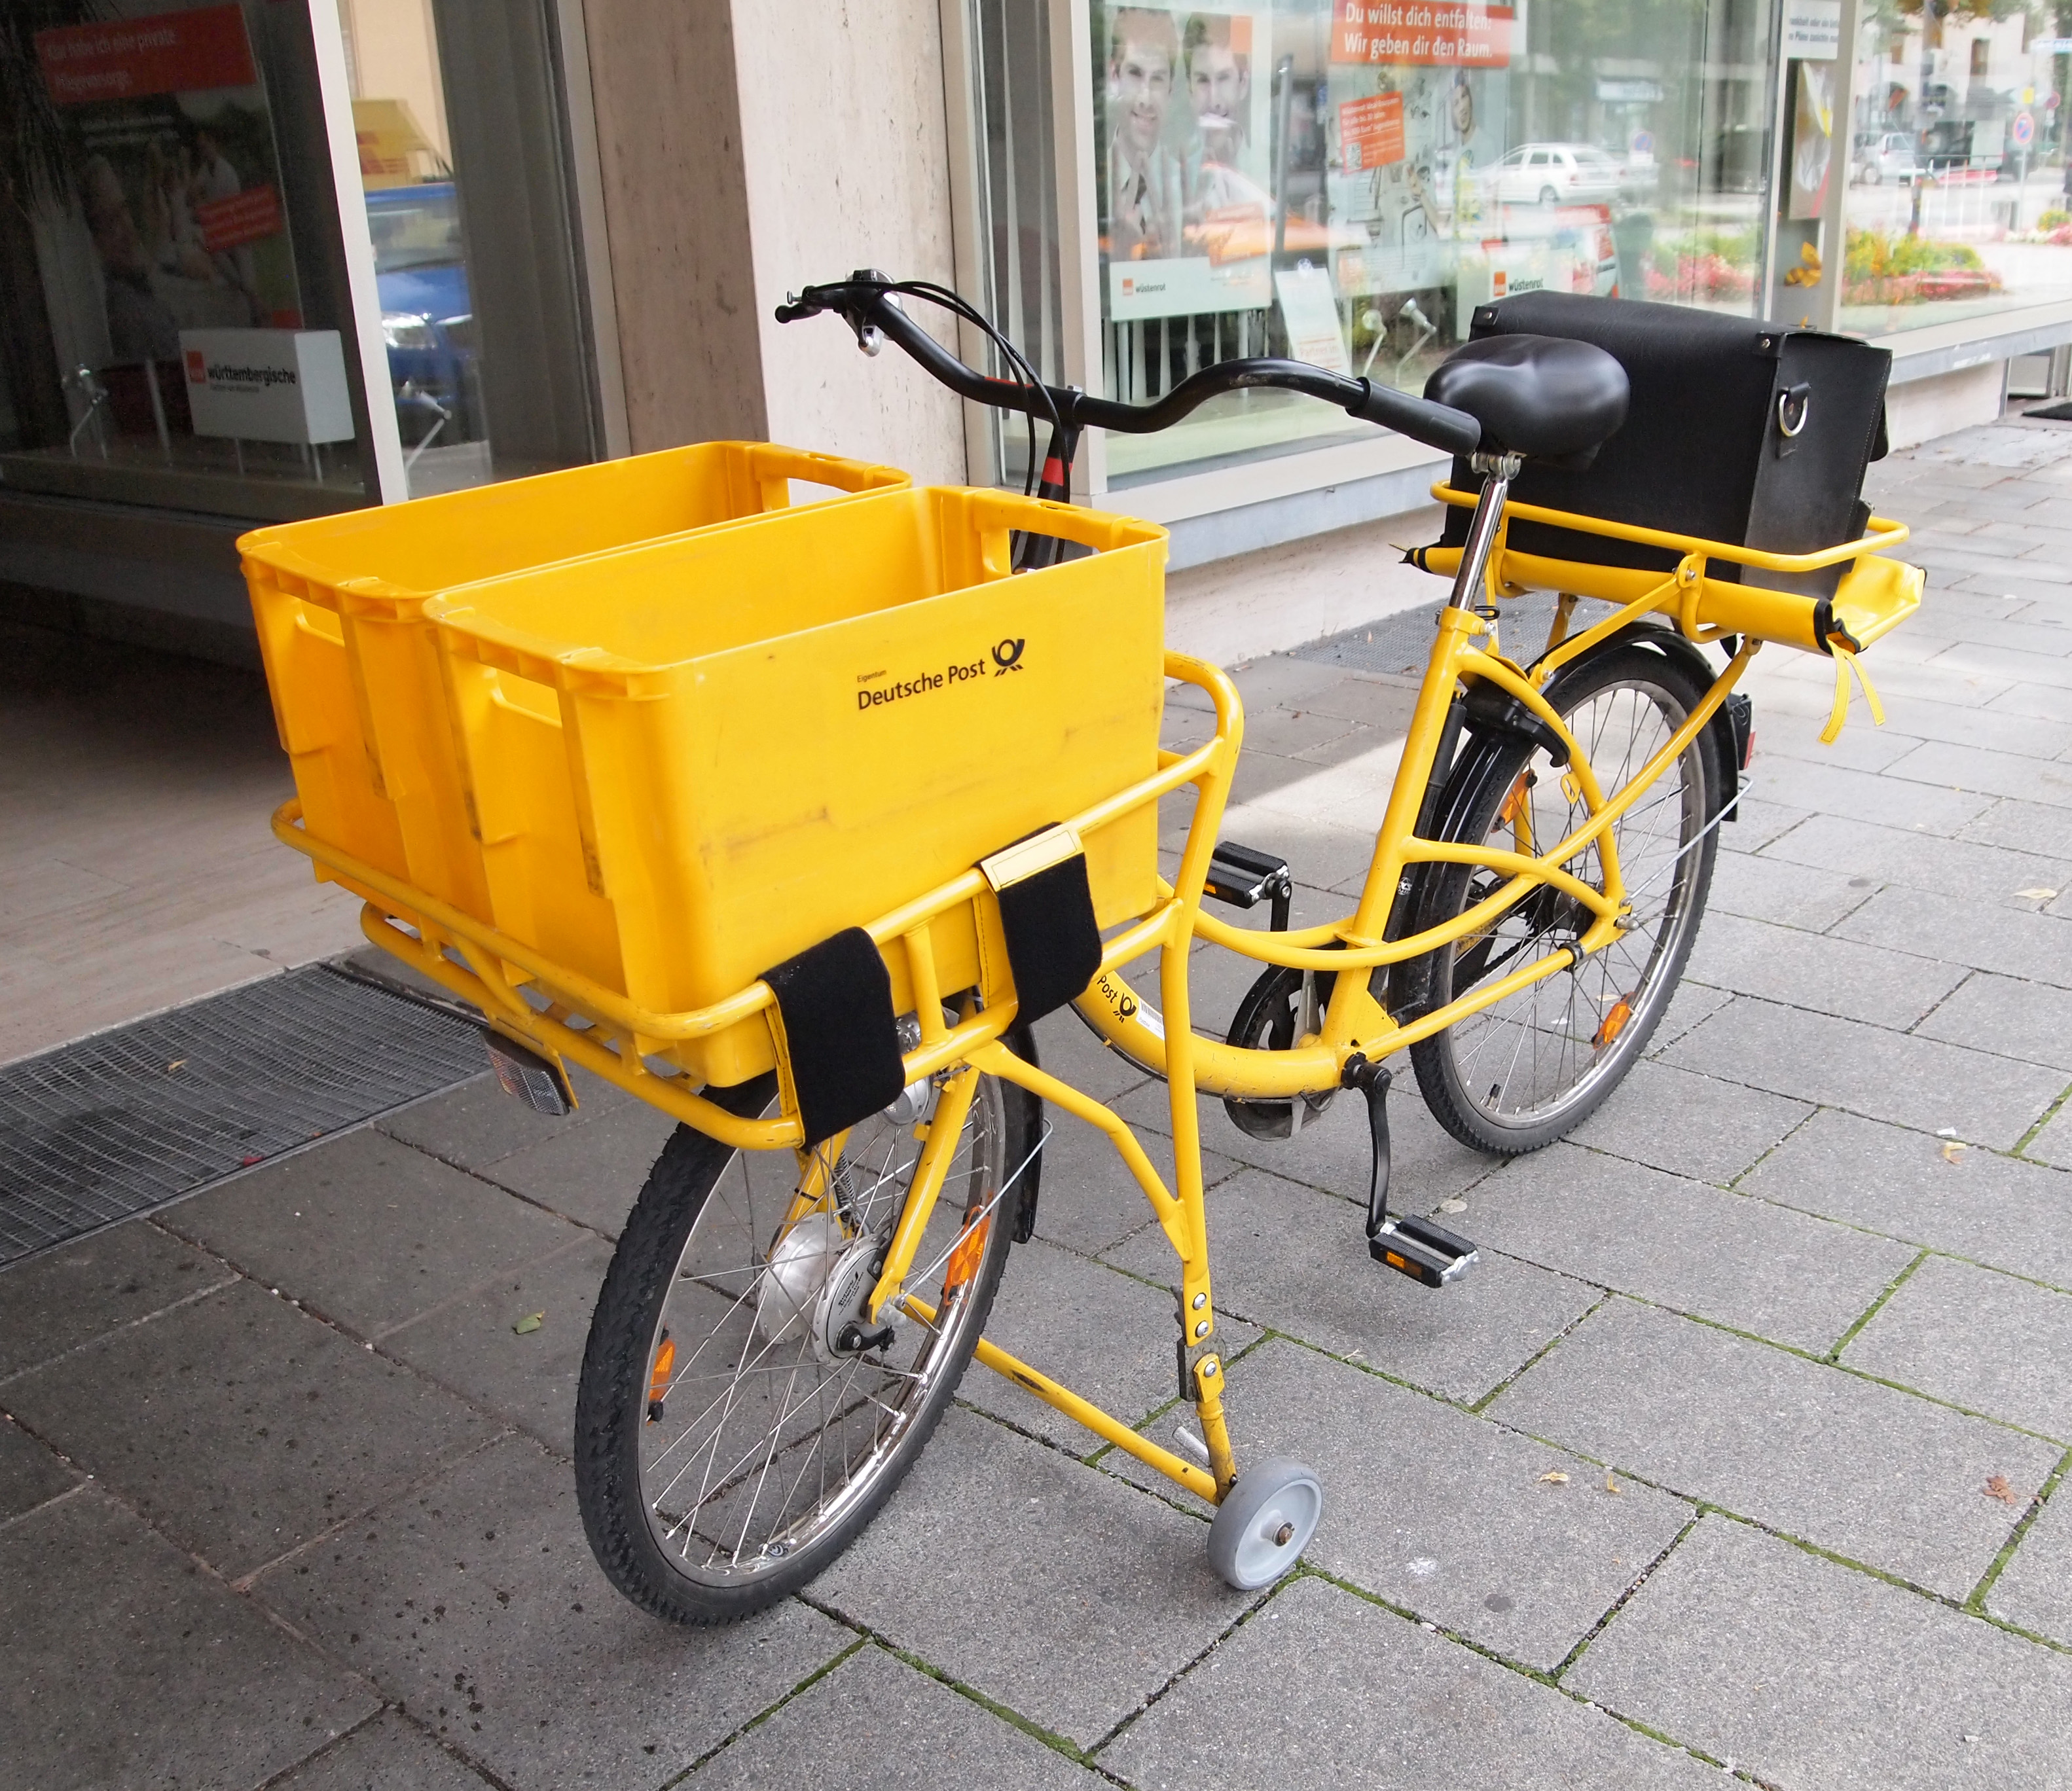 Deutsche Post bicycle